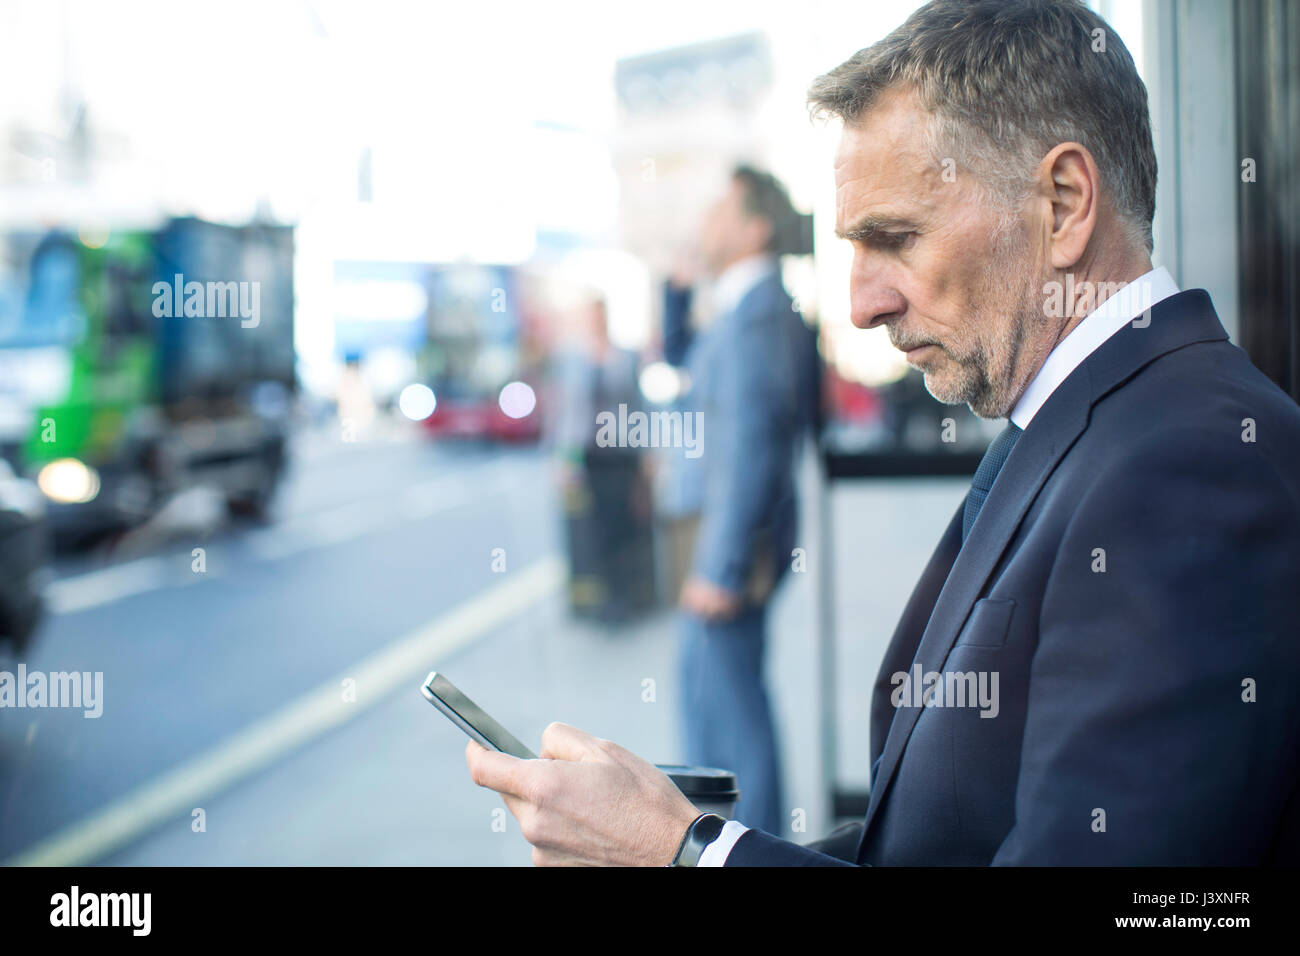 Imprenditore in attesa presso la fermata utilizza lo smartphone, London, Regno Unito Foto Stock